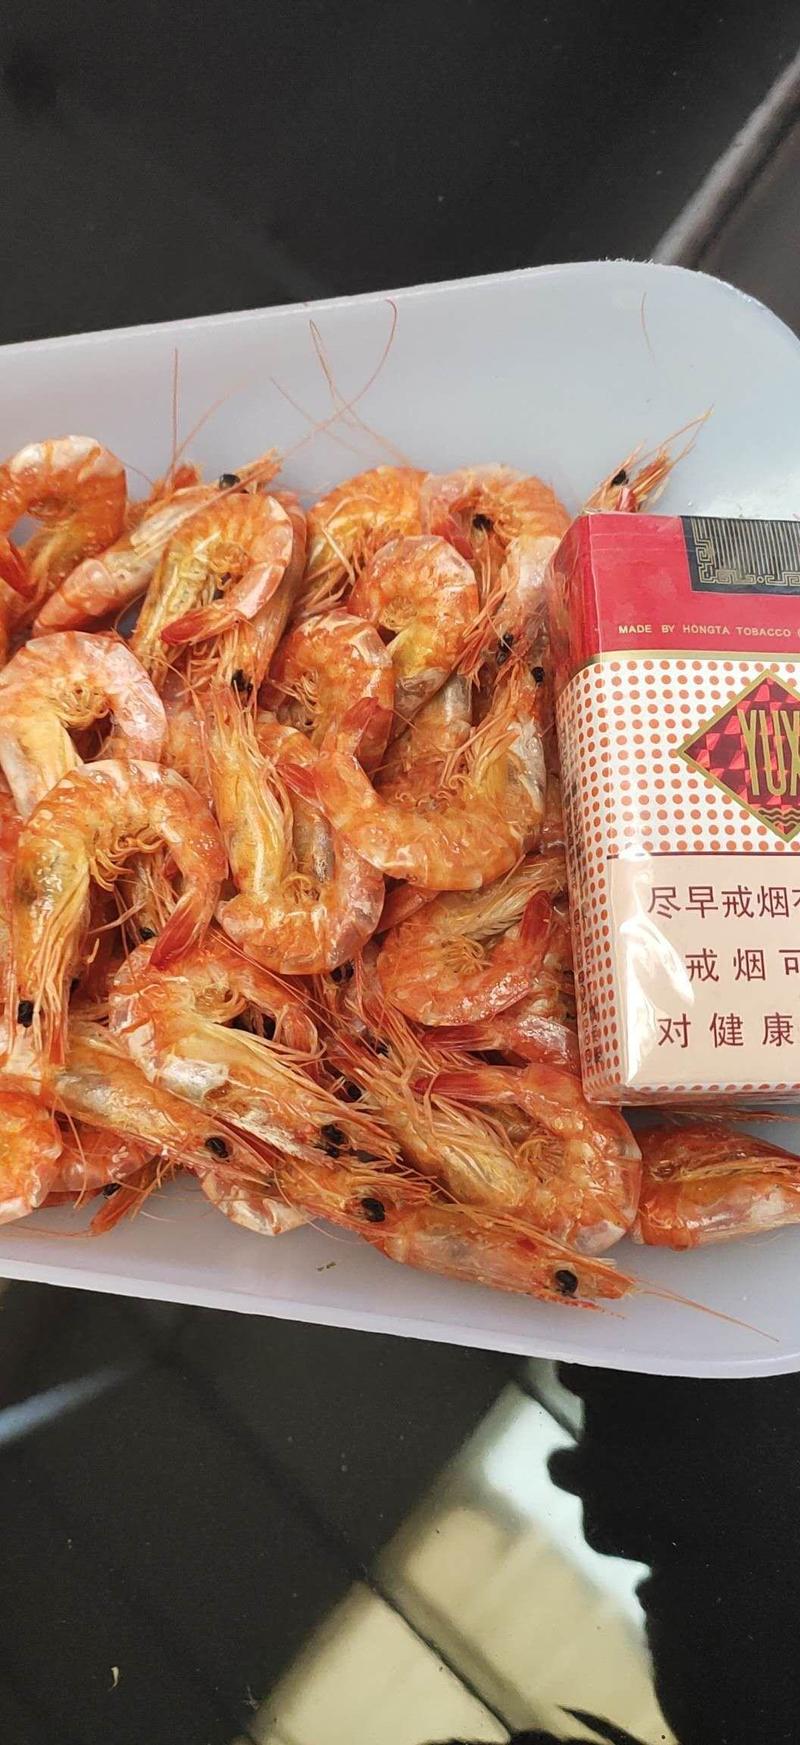 烤虾干渤海盐田虾可做小包装贴牌团购一二类电商旅游话会福利